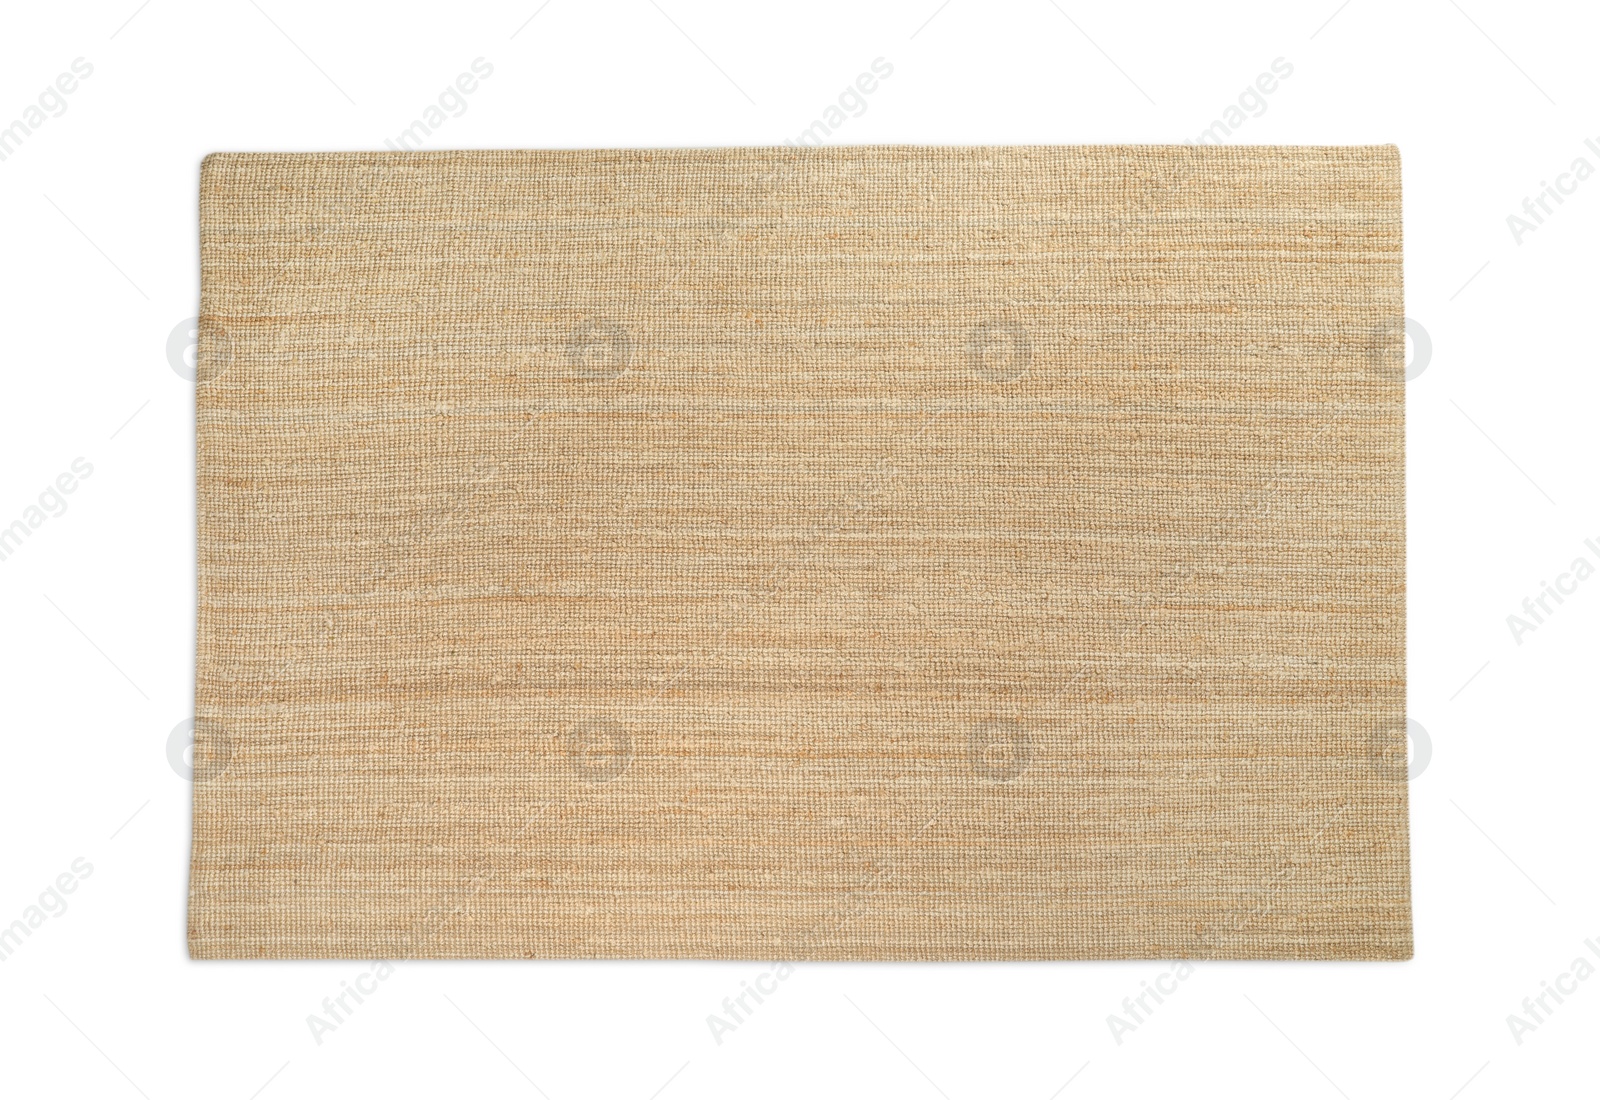 Photo of Beige carpet on wooden floor, top view